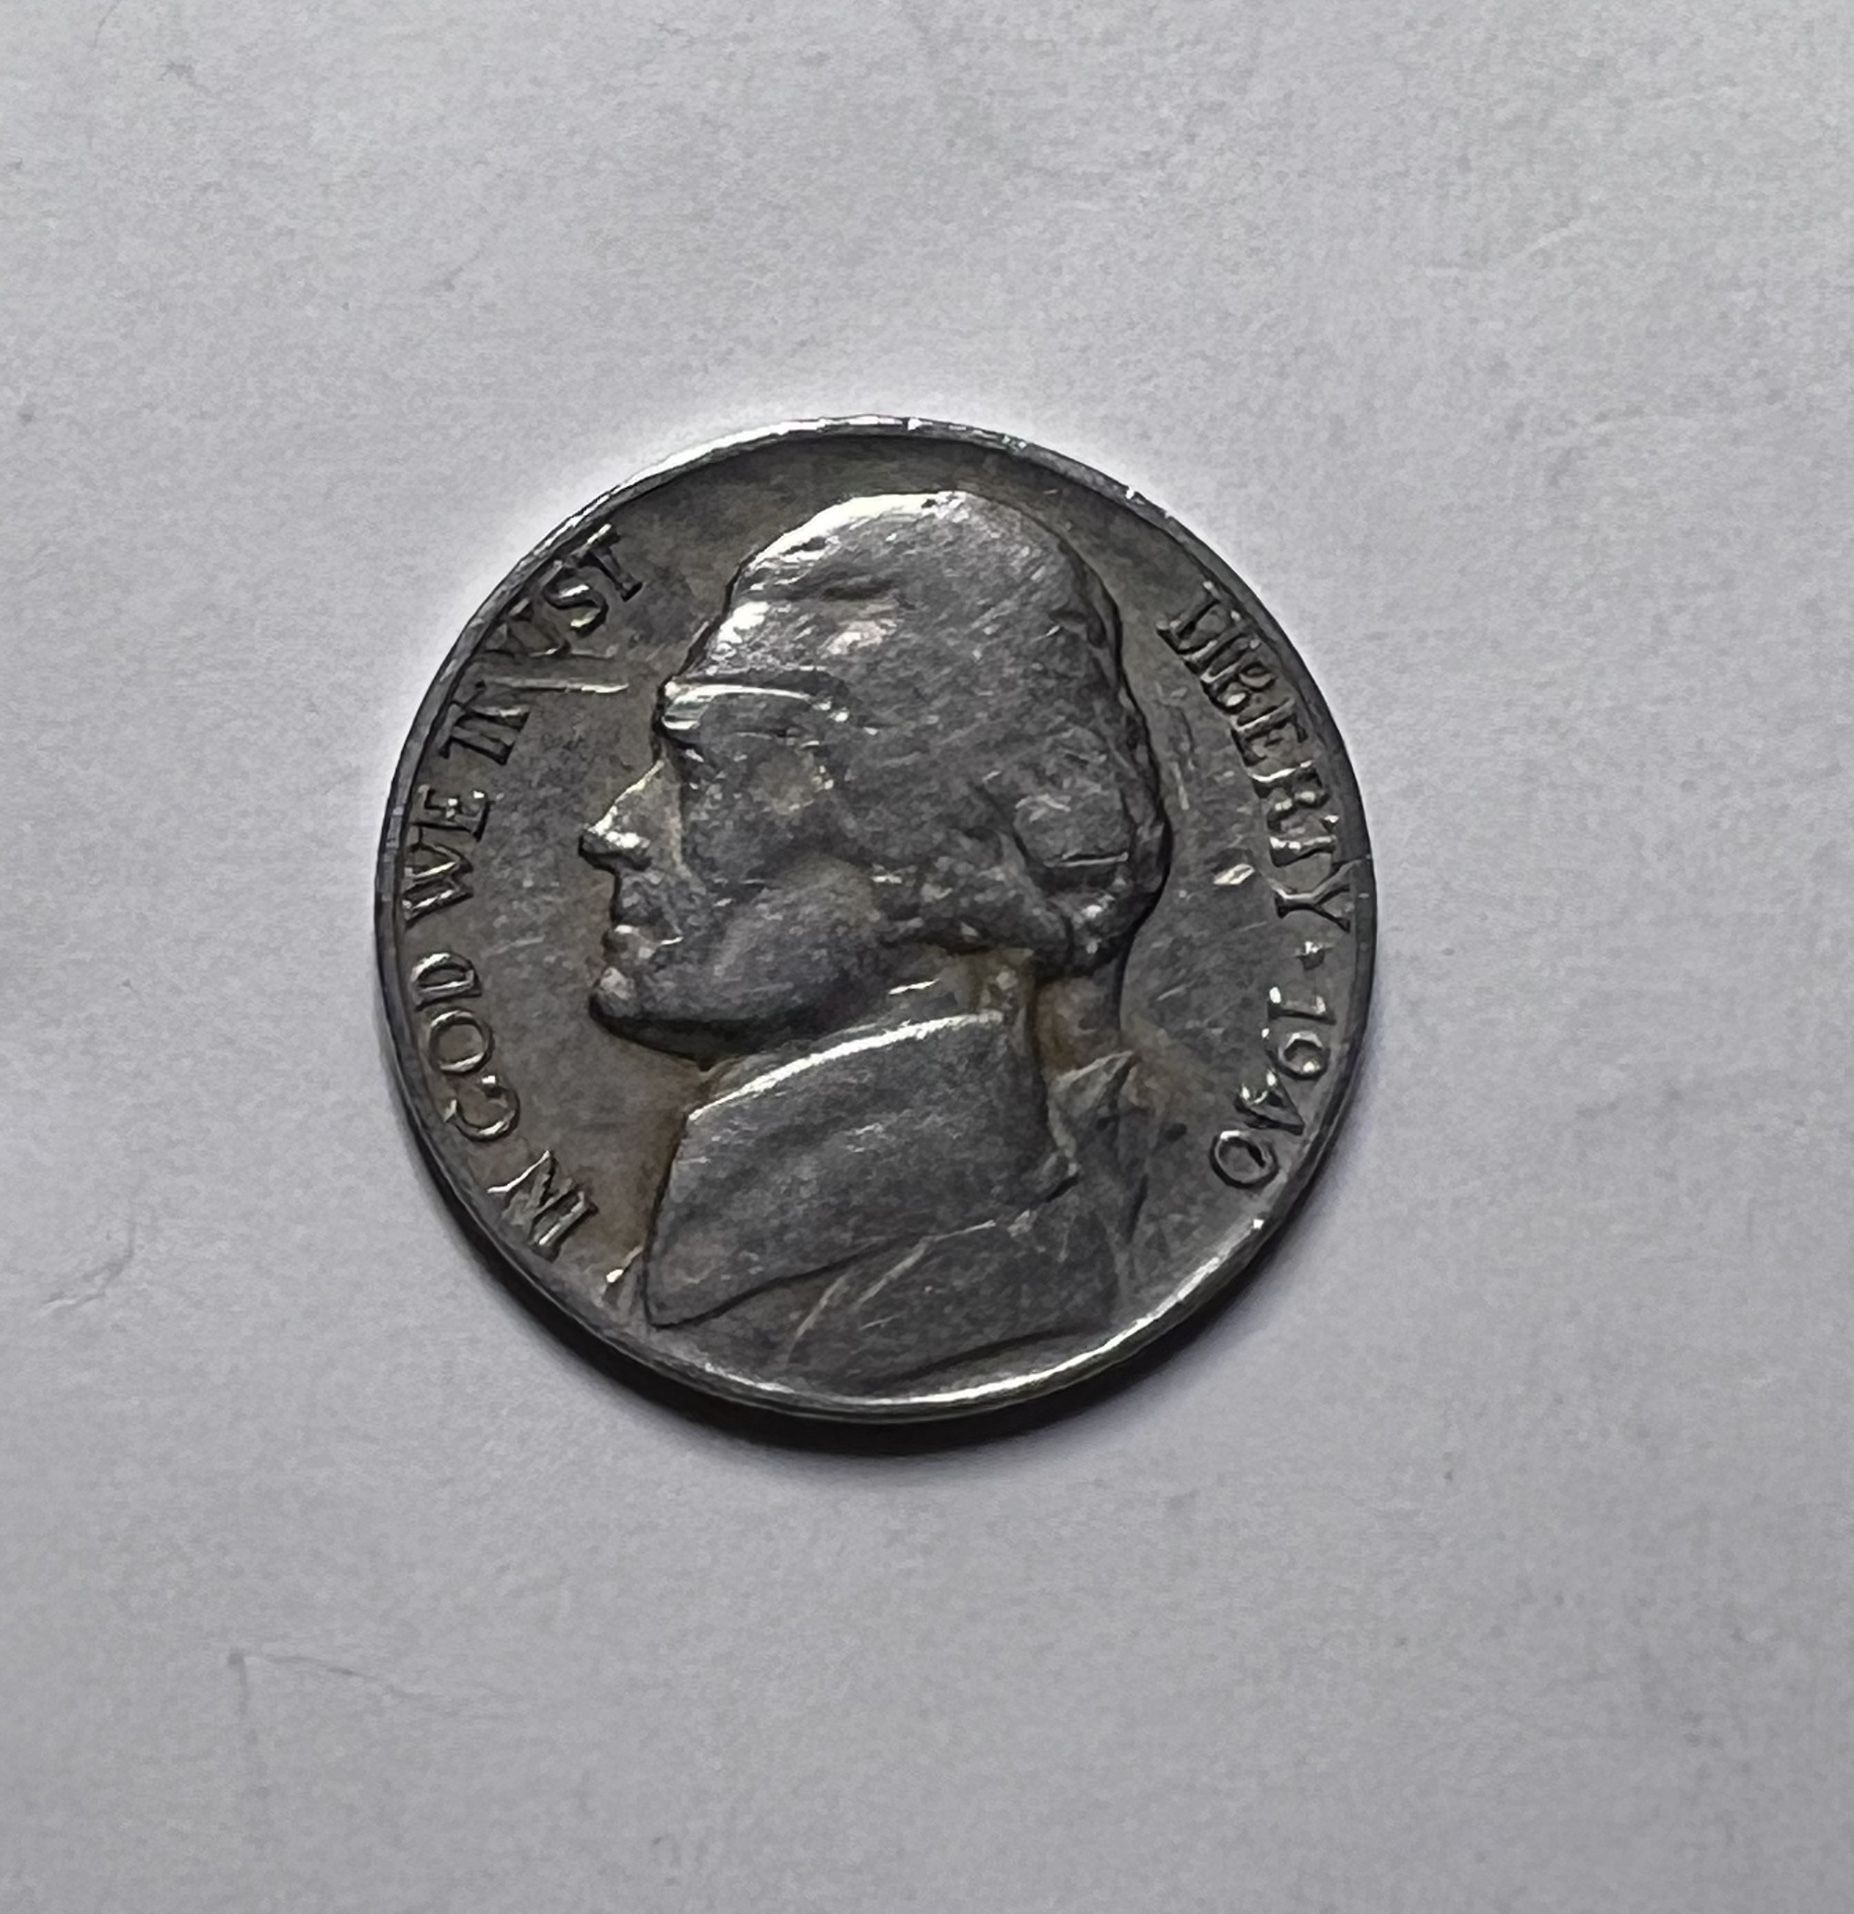 Nickel 1940